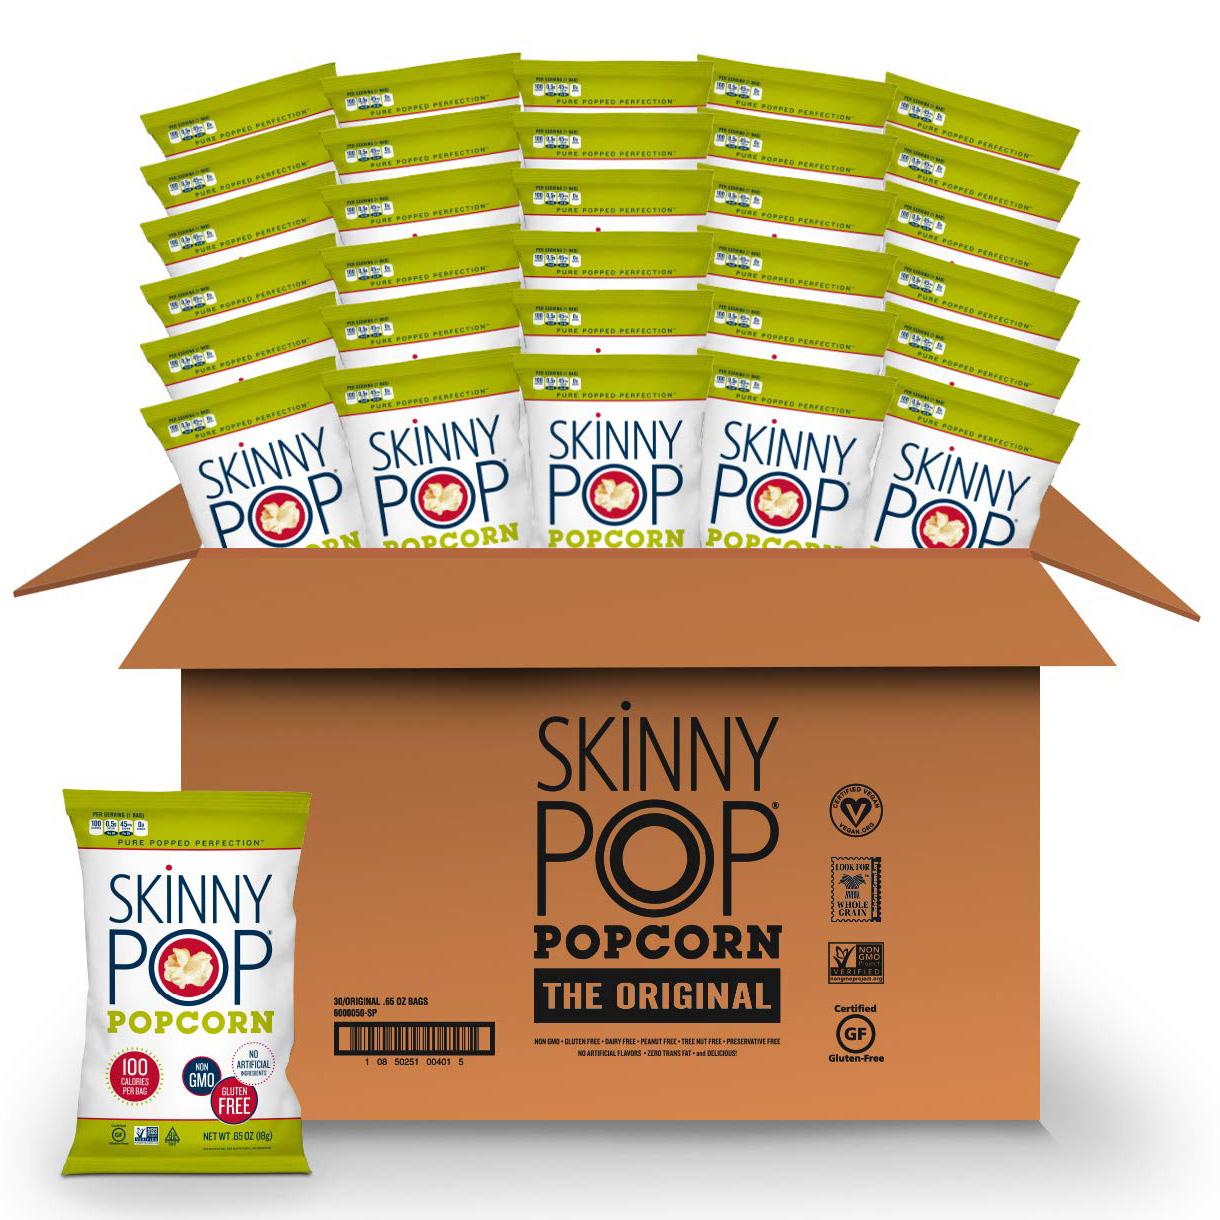 30 Skinny Pop Popcorn for $8.93 Shipped